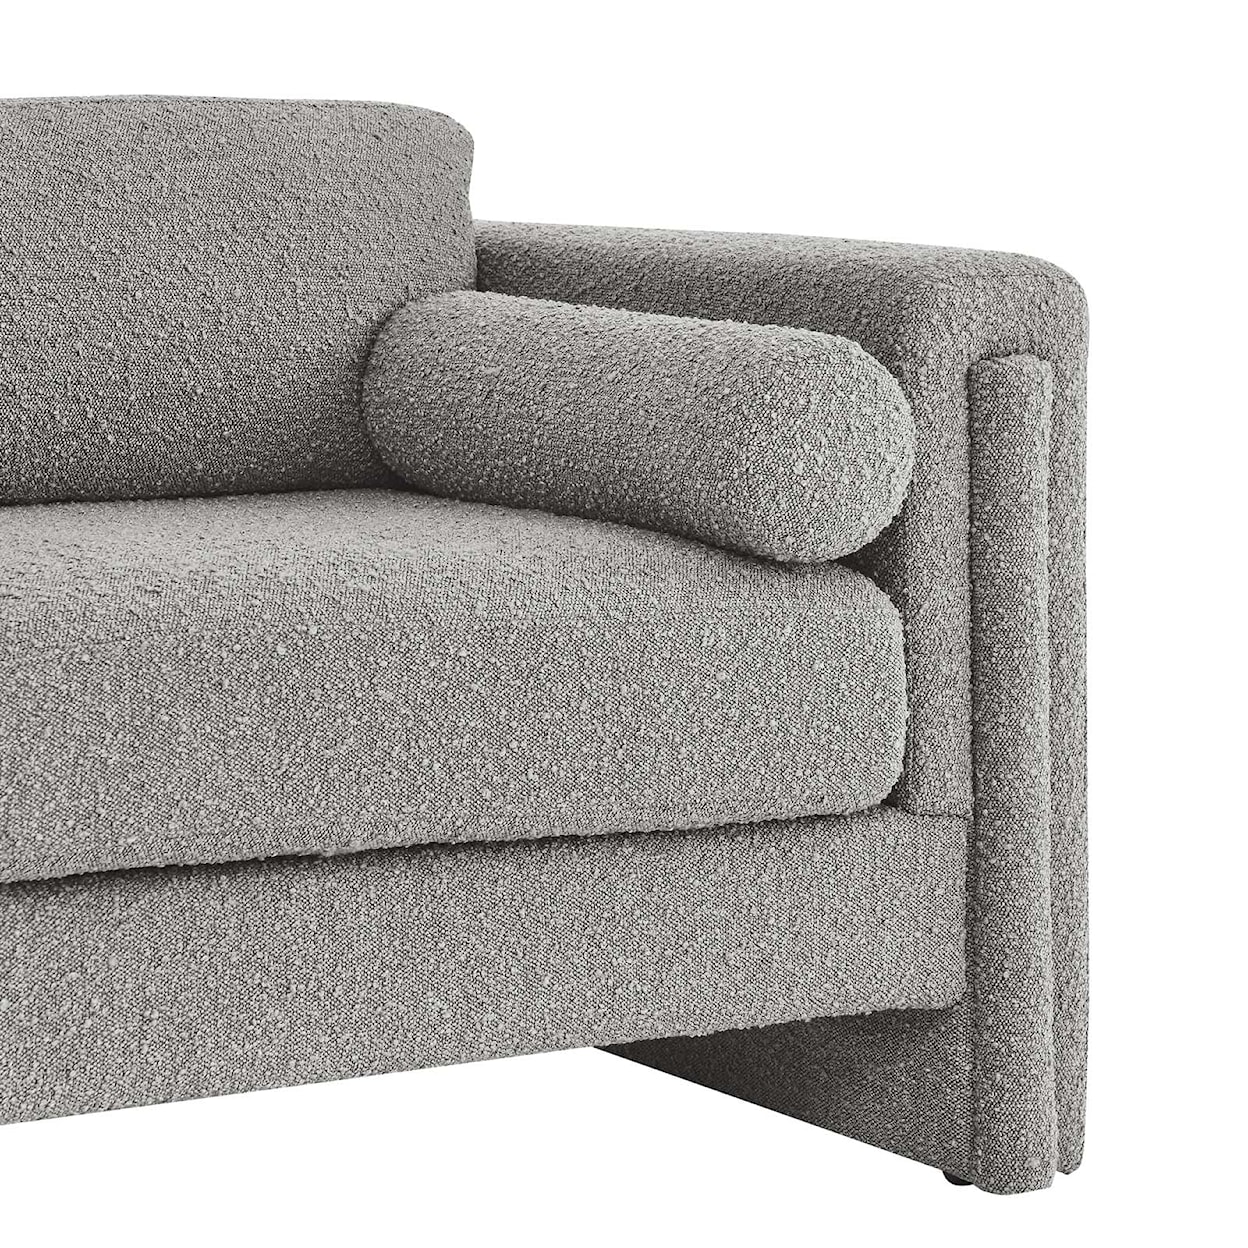 Modway Visible Visible Boucle Fabric Sofa